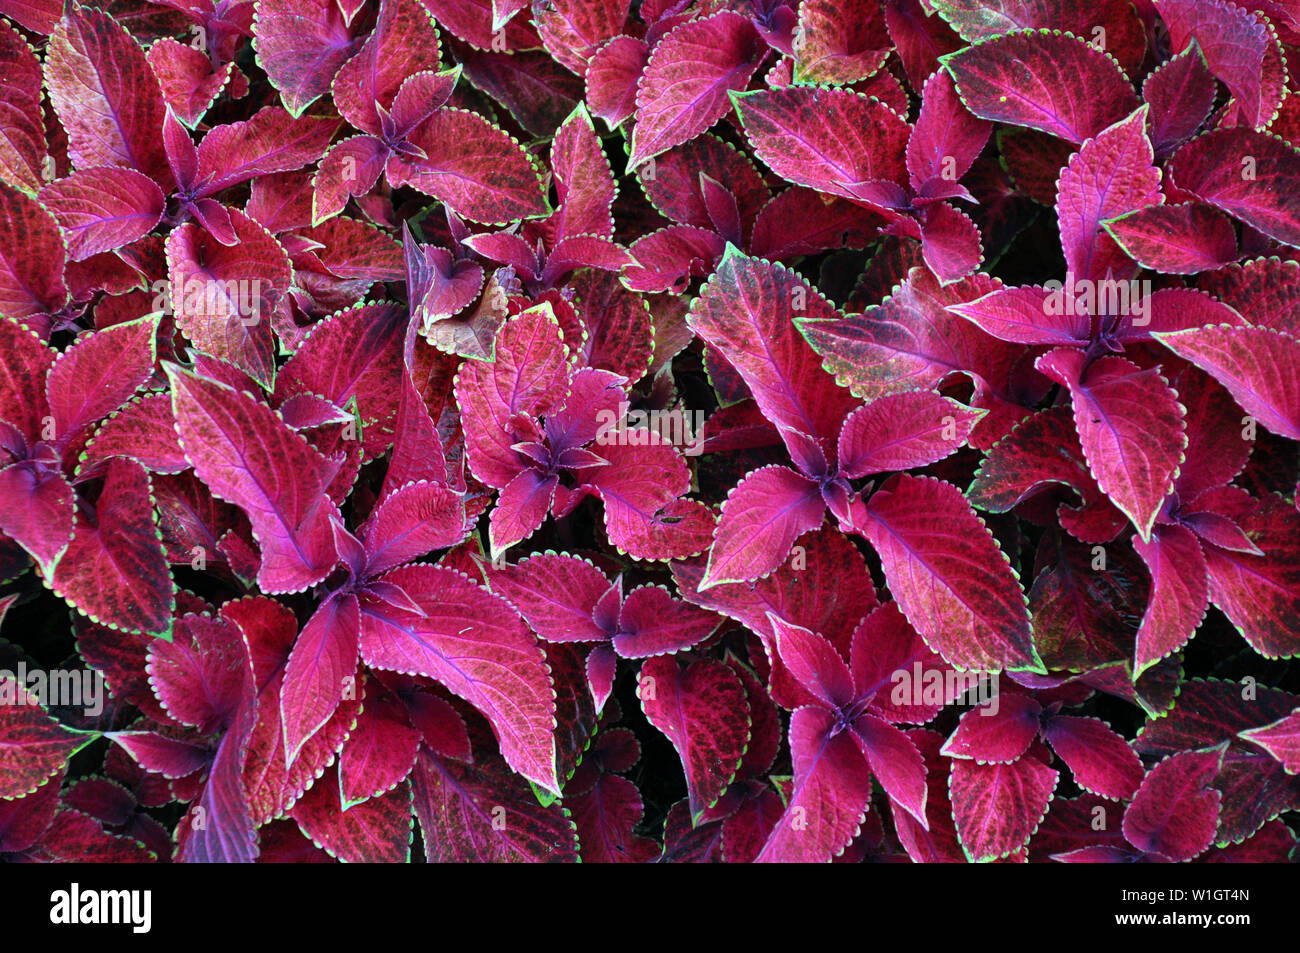 Leuchtend rote Blätter der mehrjährige Pflanze Coleus, plectranthus scutellarioides. Dekorative red velvet coleus Fairway Pflanzen. Stockfoto